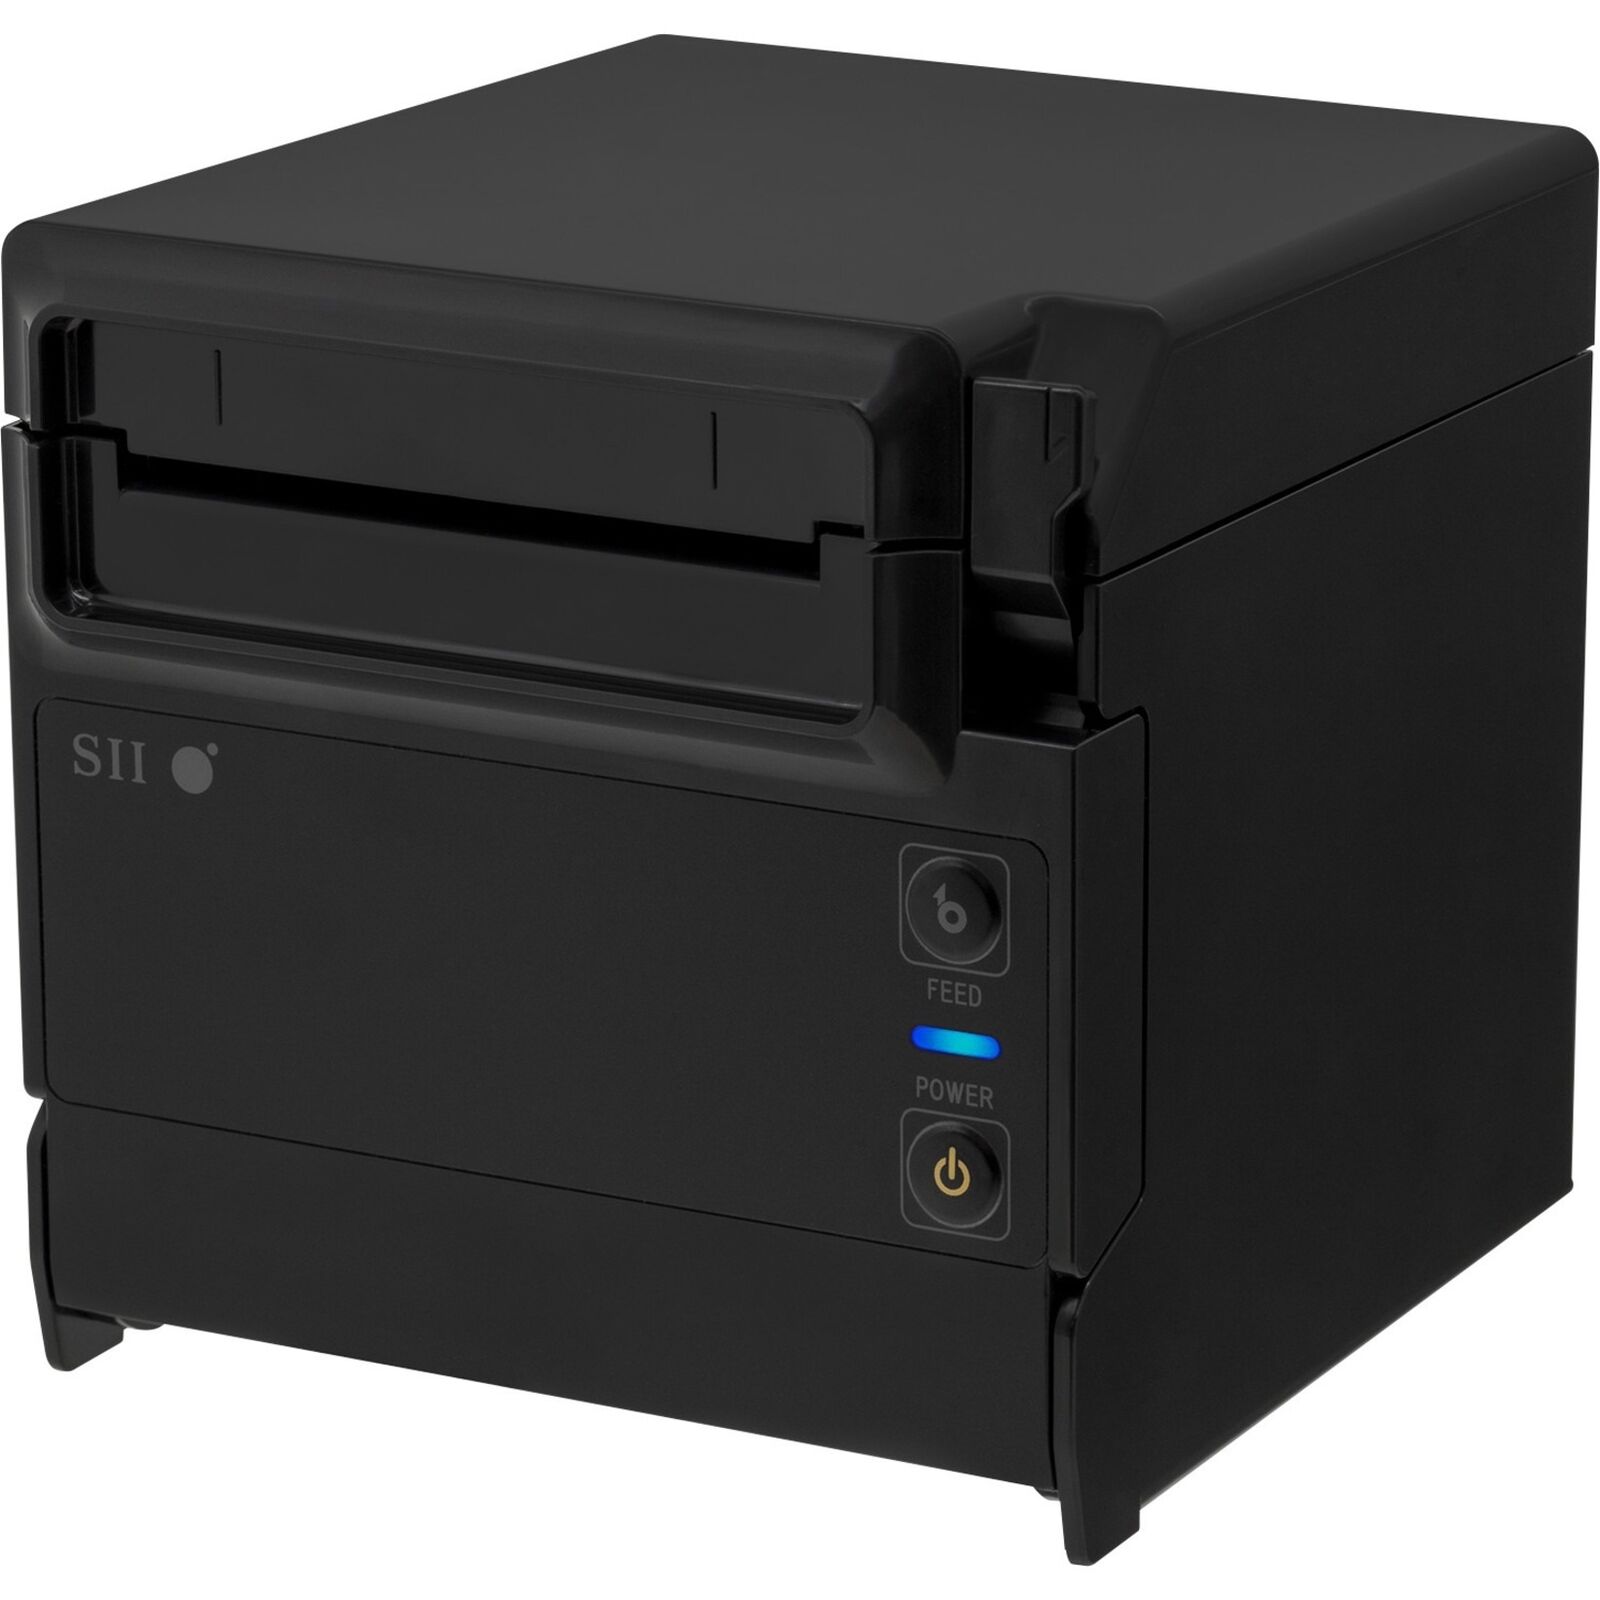 Seiko RP-F10 Desktop Direct Thermal Printer - Monochrome - Wall Mount - Label